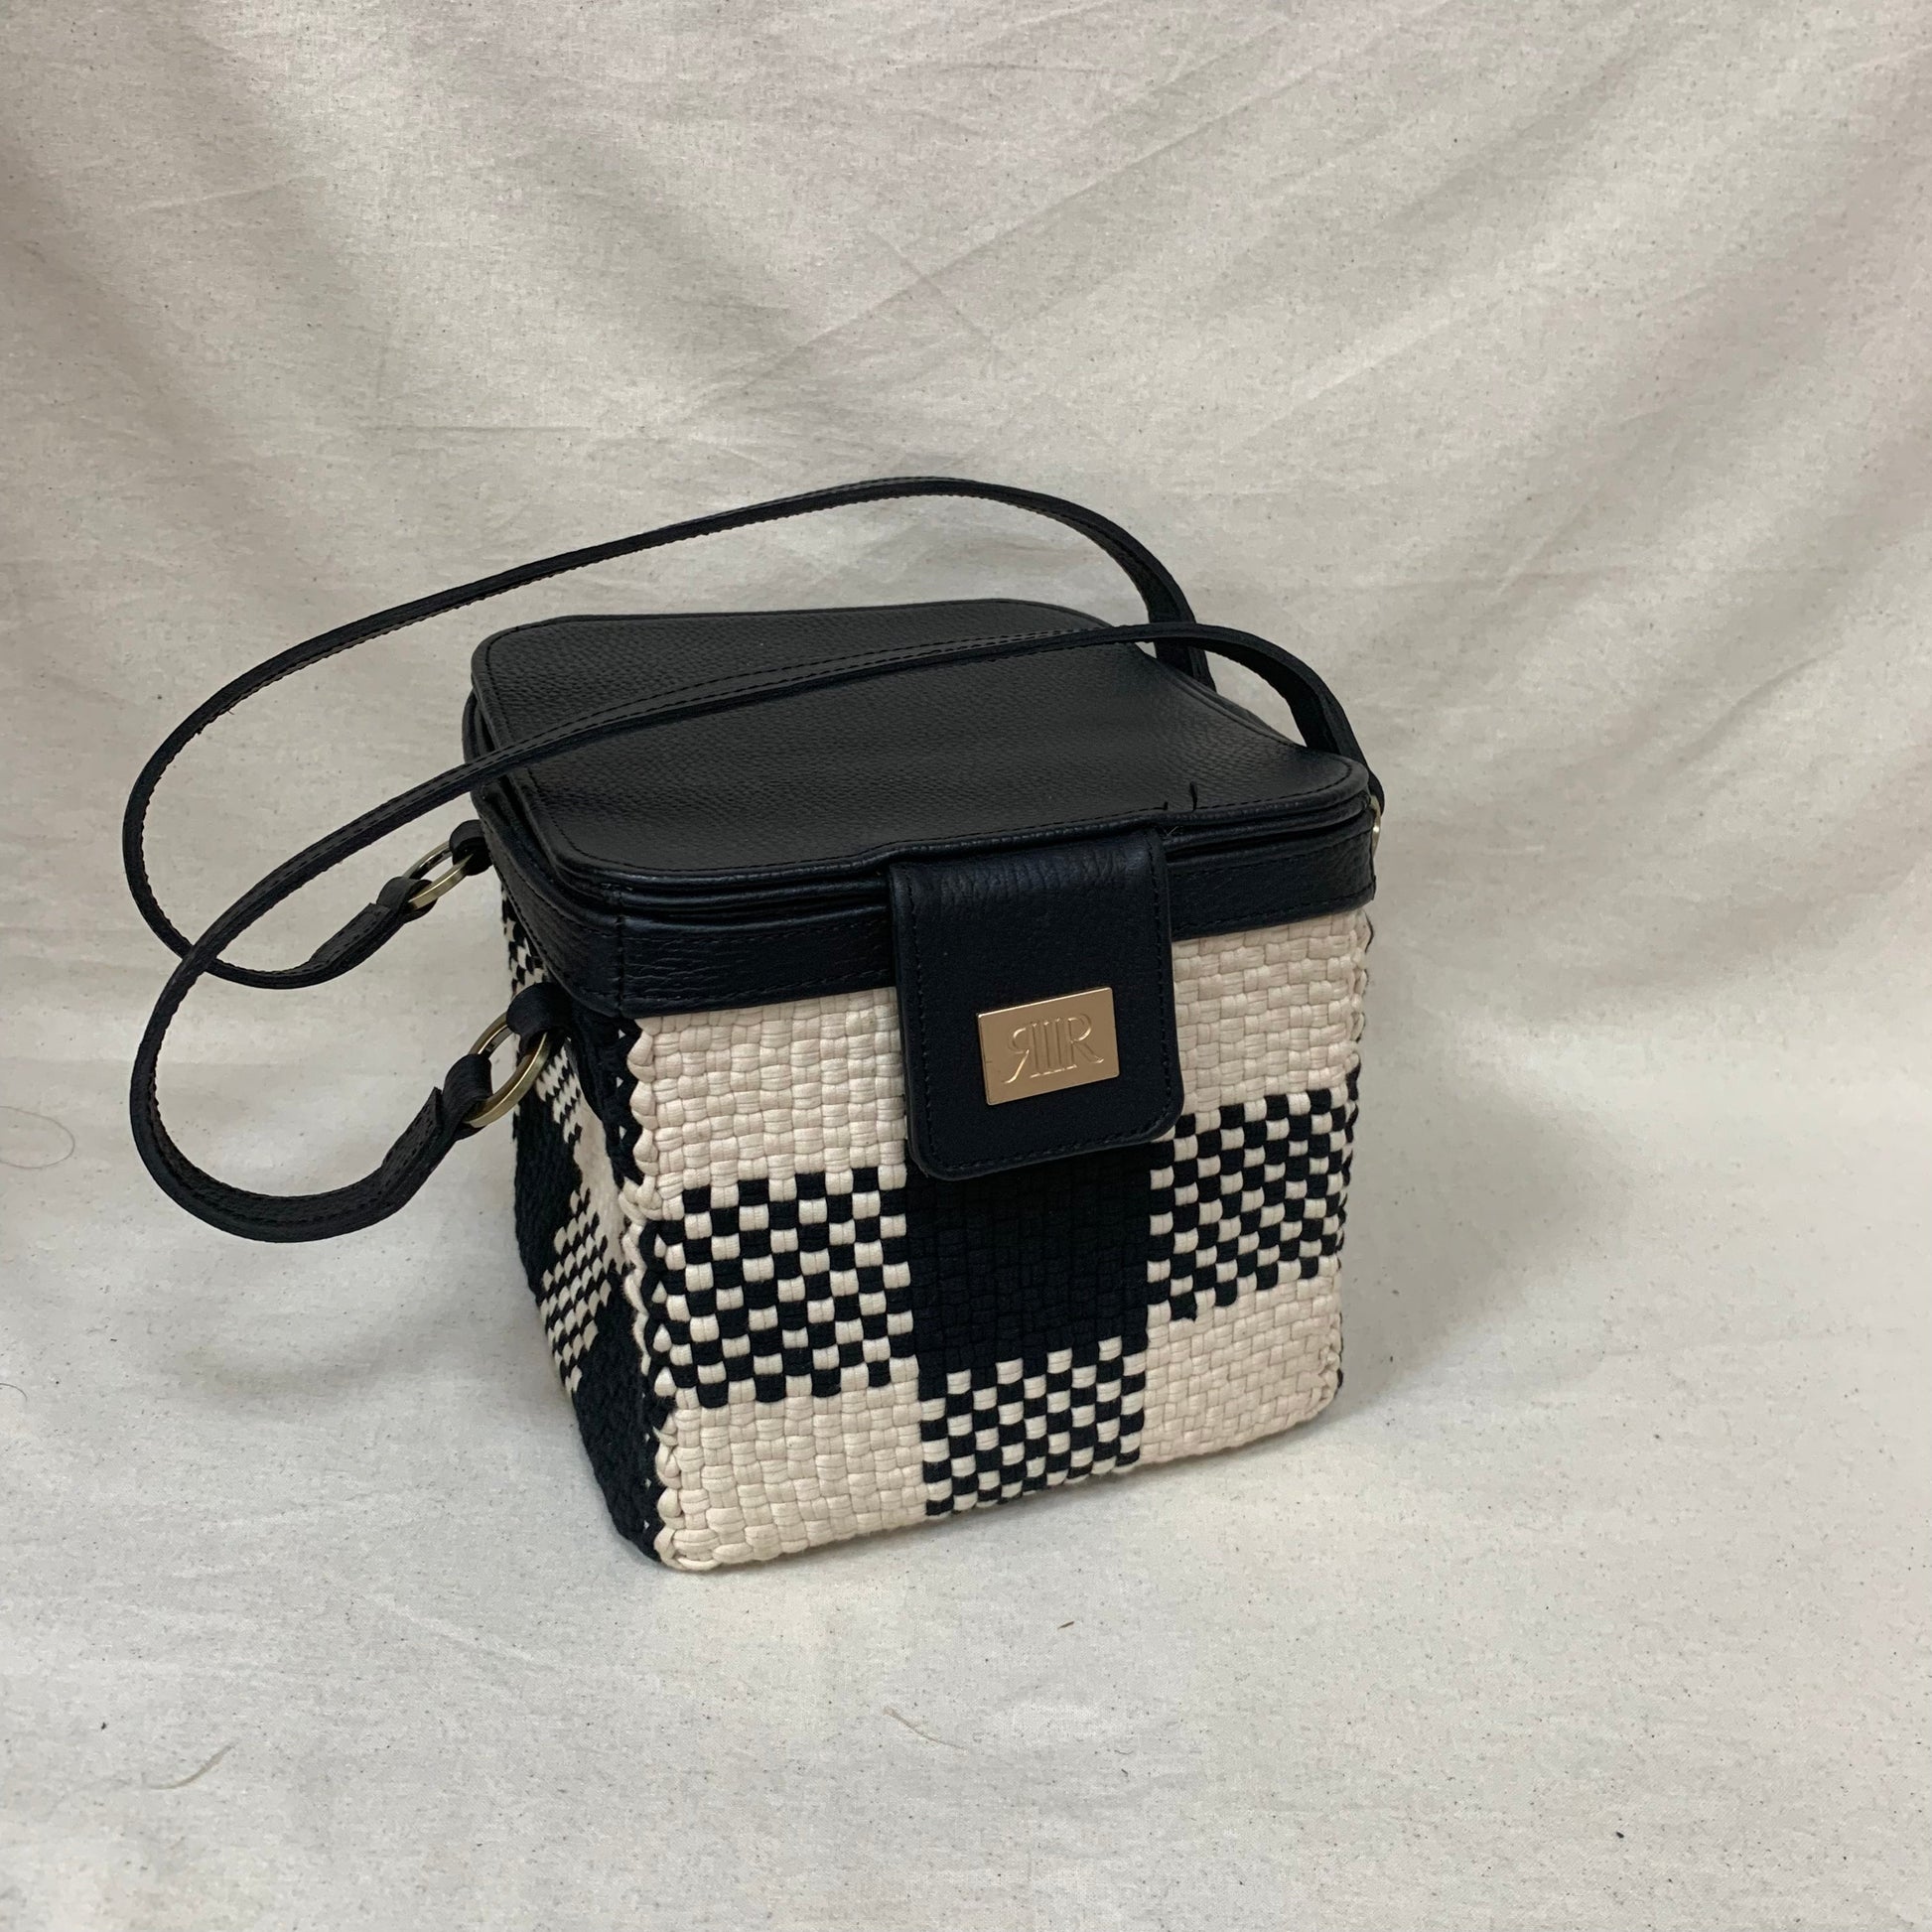 [SAMPLE] Rubiks Bag Black & Beige Fashion Rags2Riches